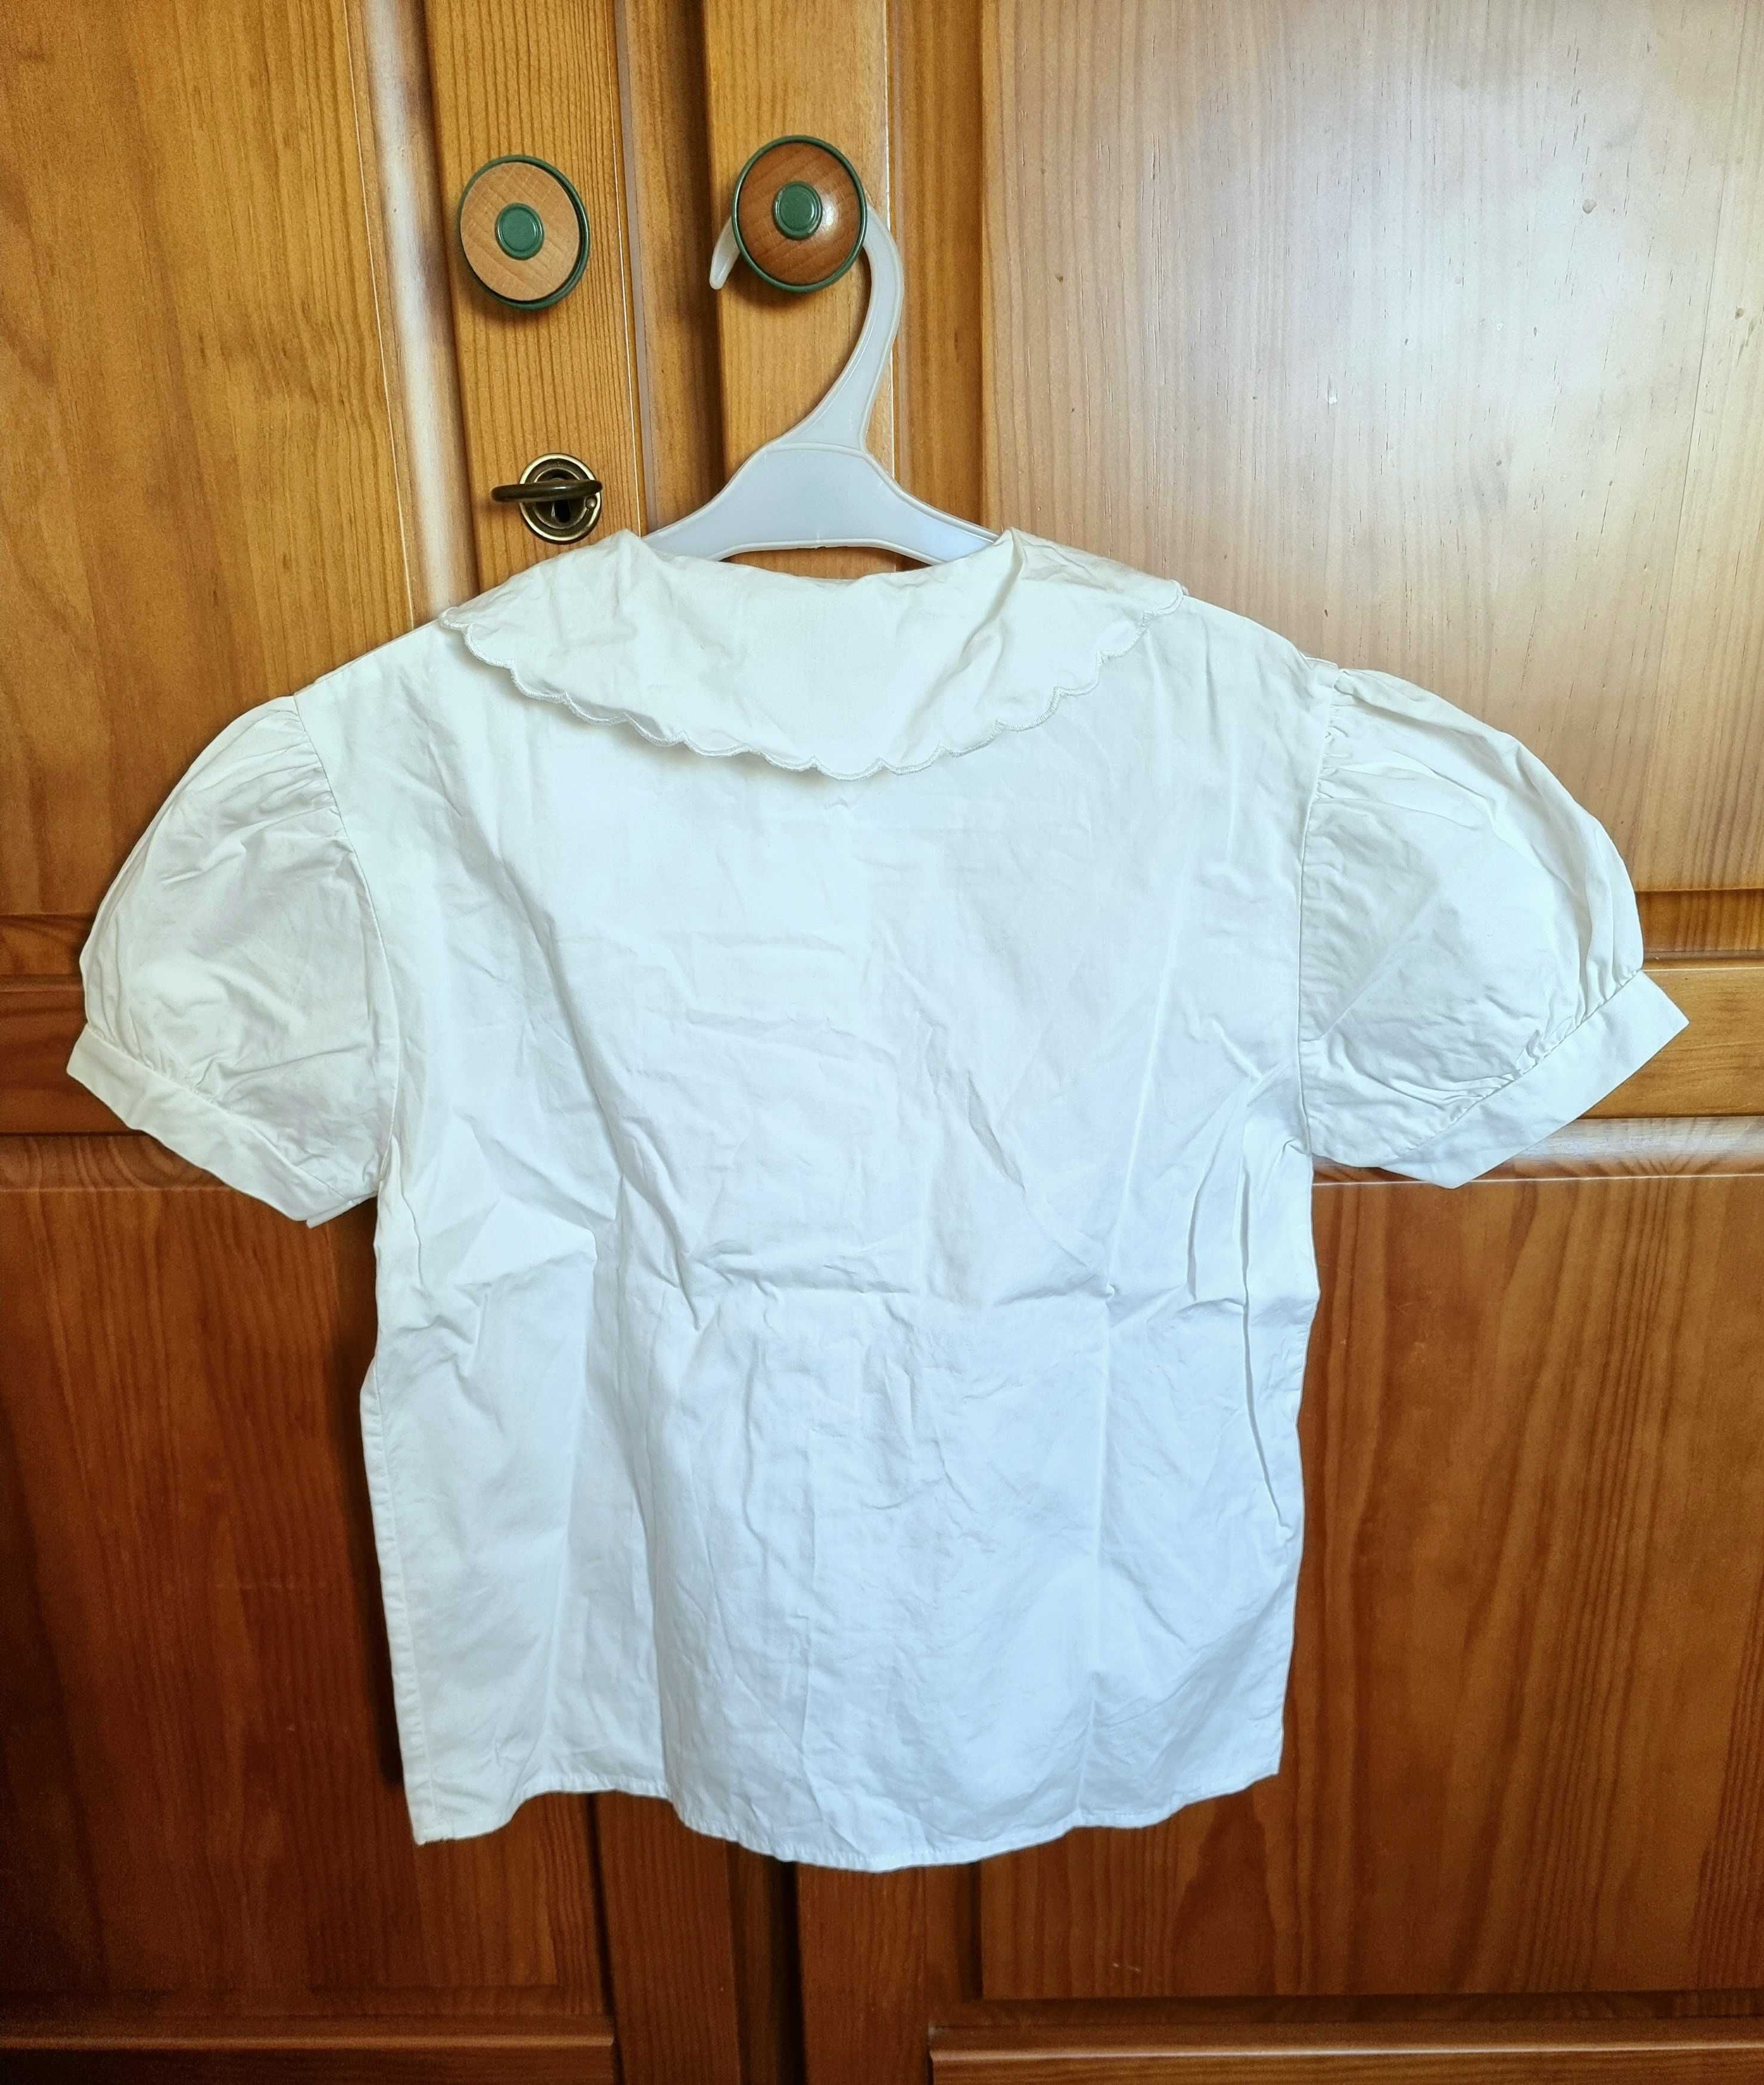 Camisa branca de manga curta, com laços na gola, 8 anos